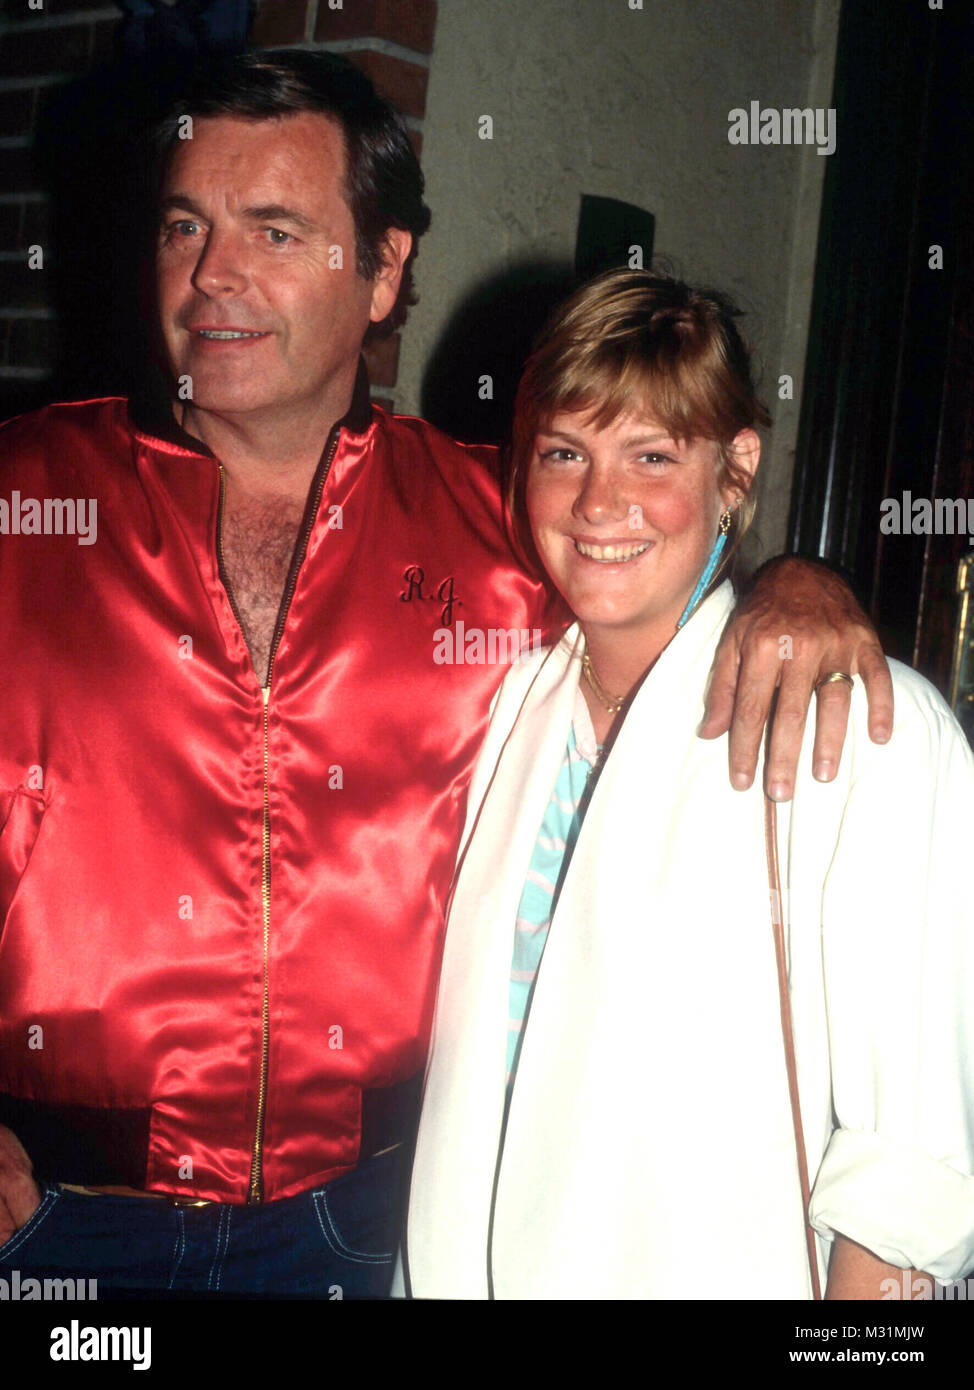 LOS ANGELES, CA - 30 juin : l'acteur Robert Wagner et fille Katie Wagner le 30 juin 1982 à Beverly Hills, Californie. Photo de Barry King/Alamy Stock Photo Banque D'Images